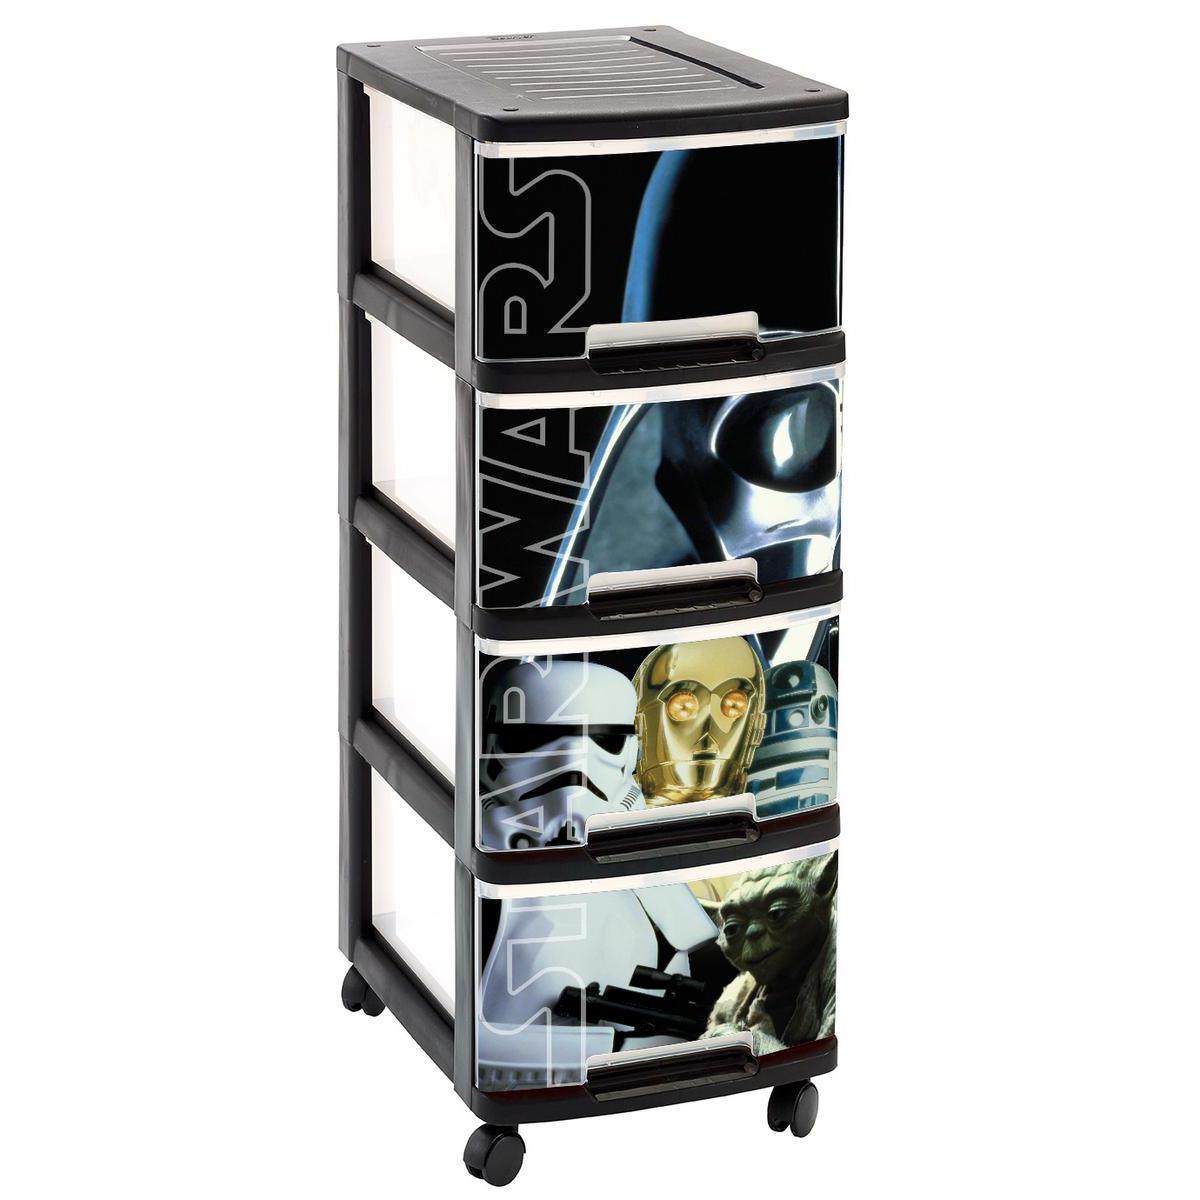 Tour 4 tiroirs Star Wars - Plastique - 26,4 x 35,1 x 67,5 cm - Multicolore